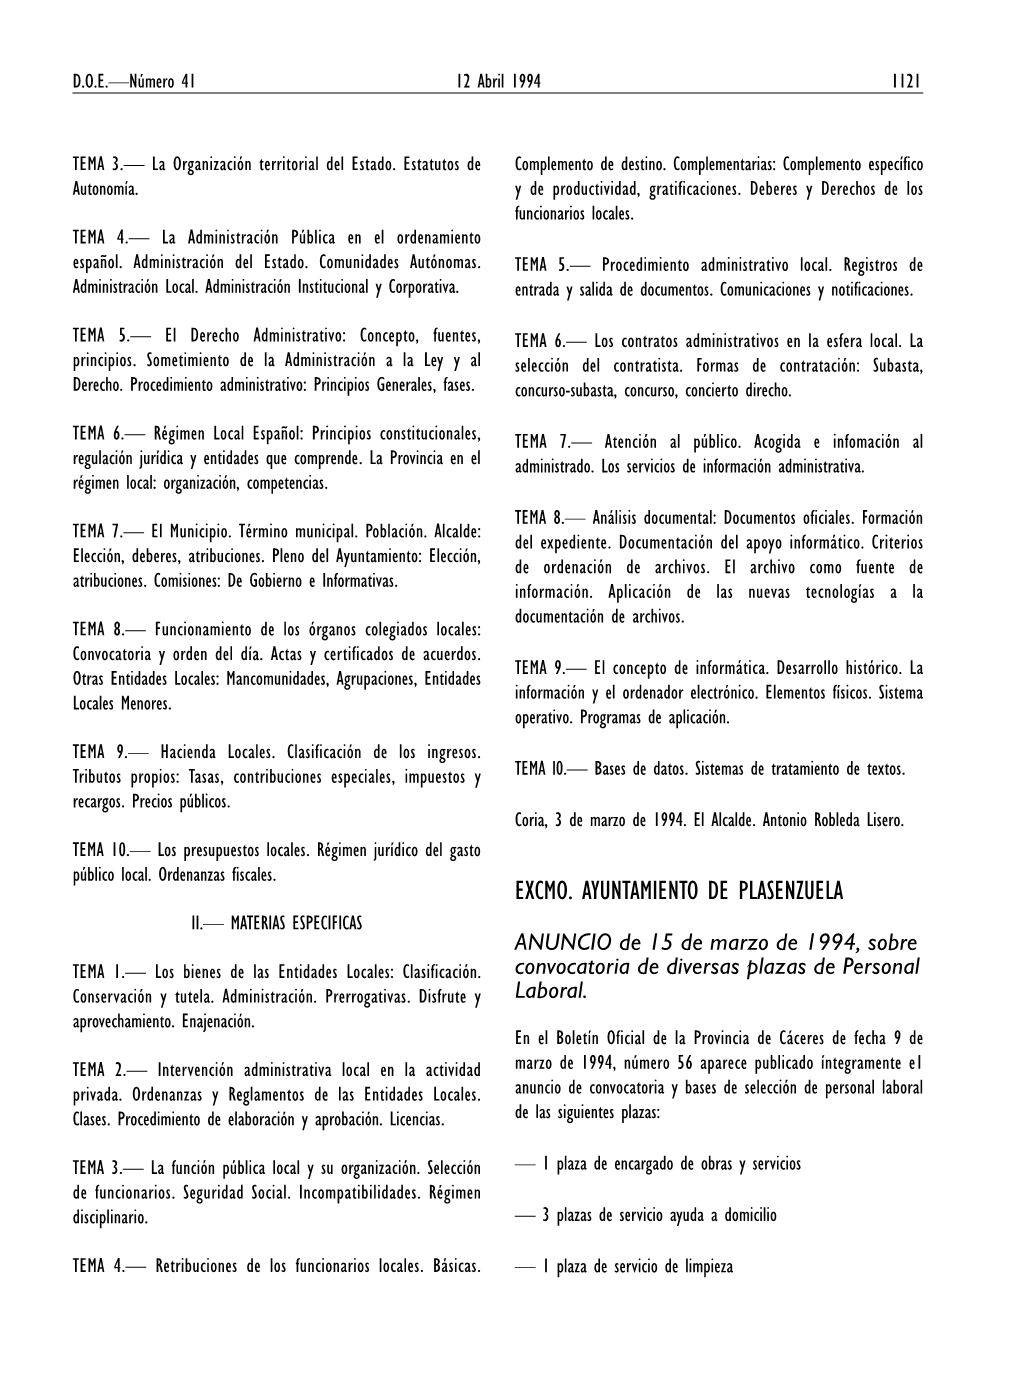 EXCMO. AYUNTAMIENTO DE PLASENZUELA II.— MATERIAS ESPECIFICAS ANUNCIO De 15 De Marzo De 1994, Sobre TEMA 1.— Los Bienes De Las Entidades Locales: Clasificación